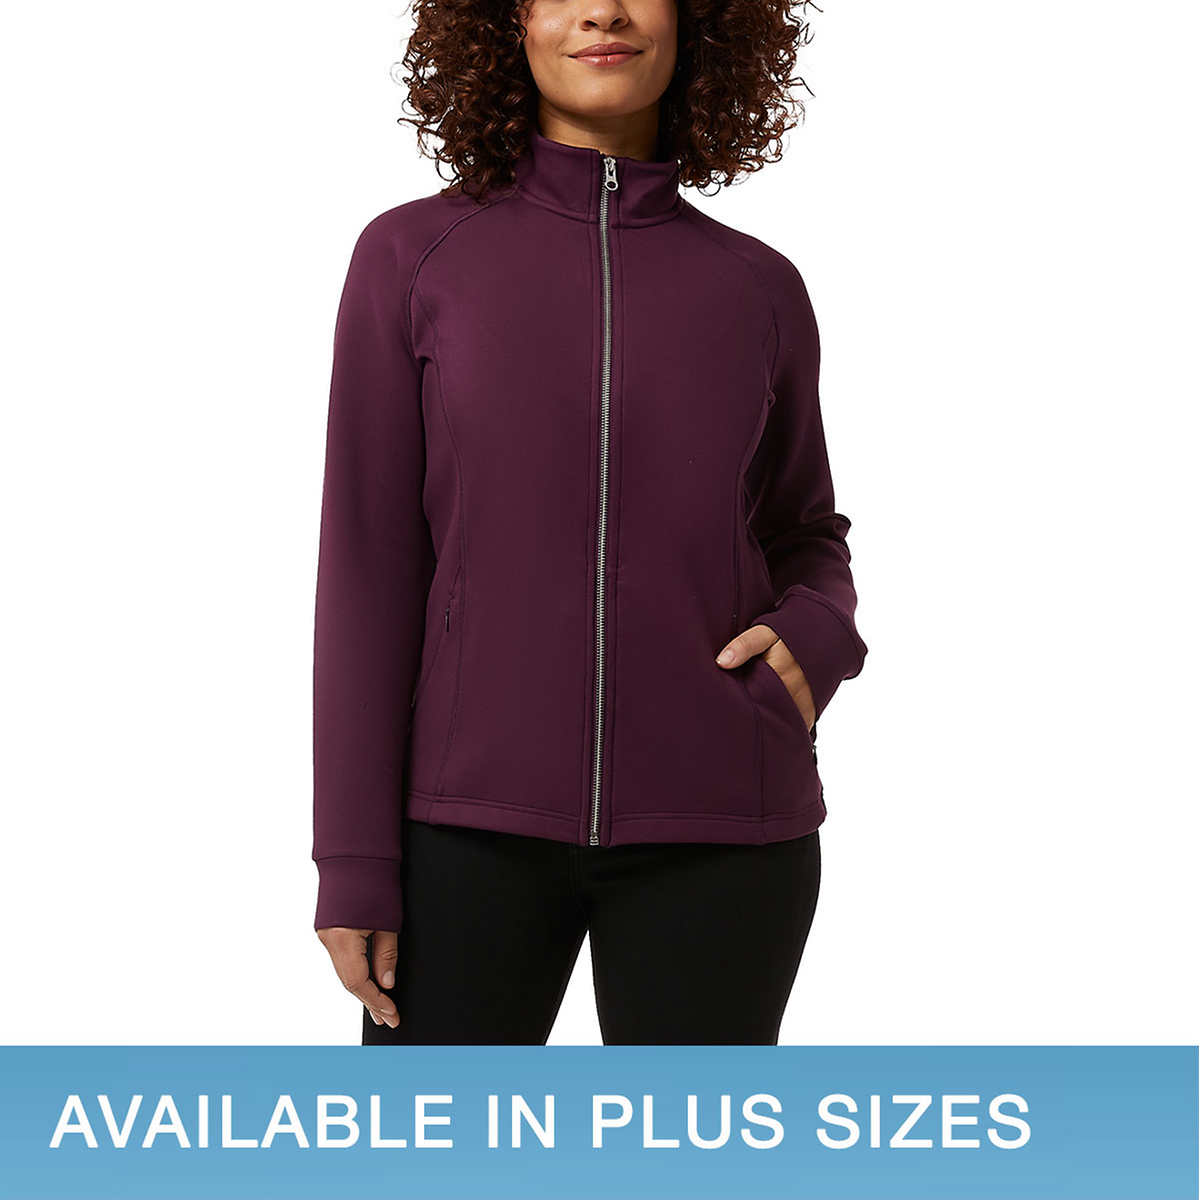 Mondetta Ladies' Lightweight Active Top, purple, Medium brand new in bag  size M